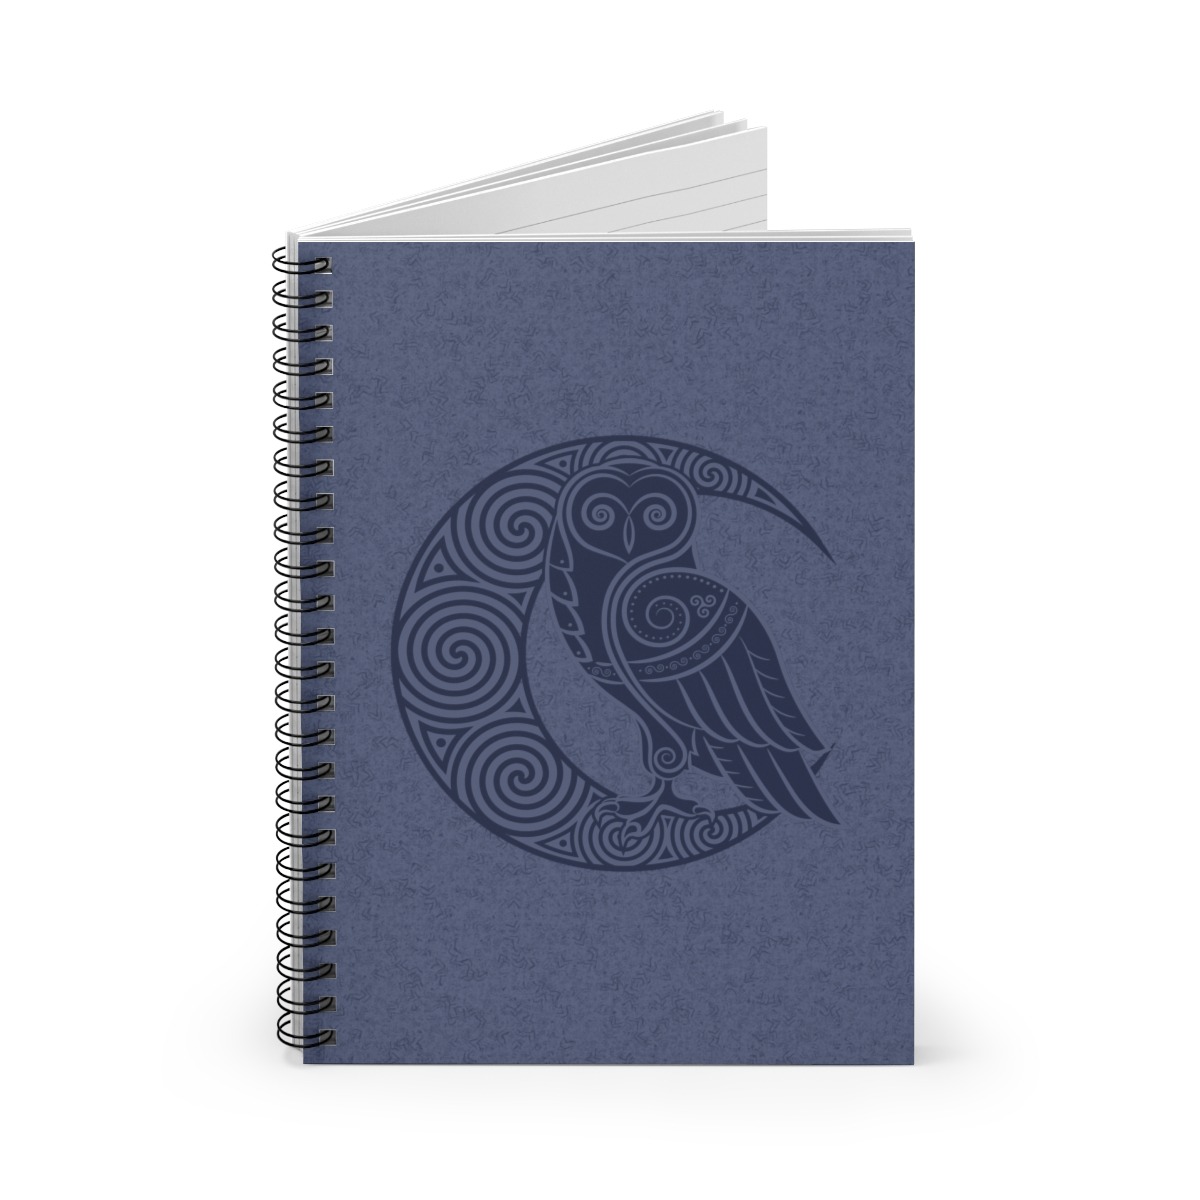 Blue Owl Crescent Moon Spiral Notebook